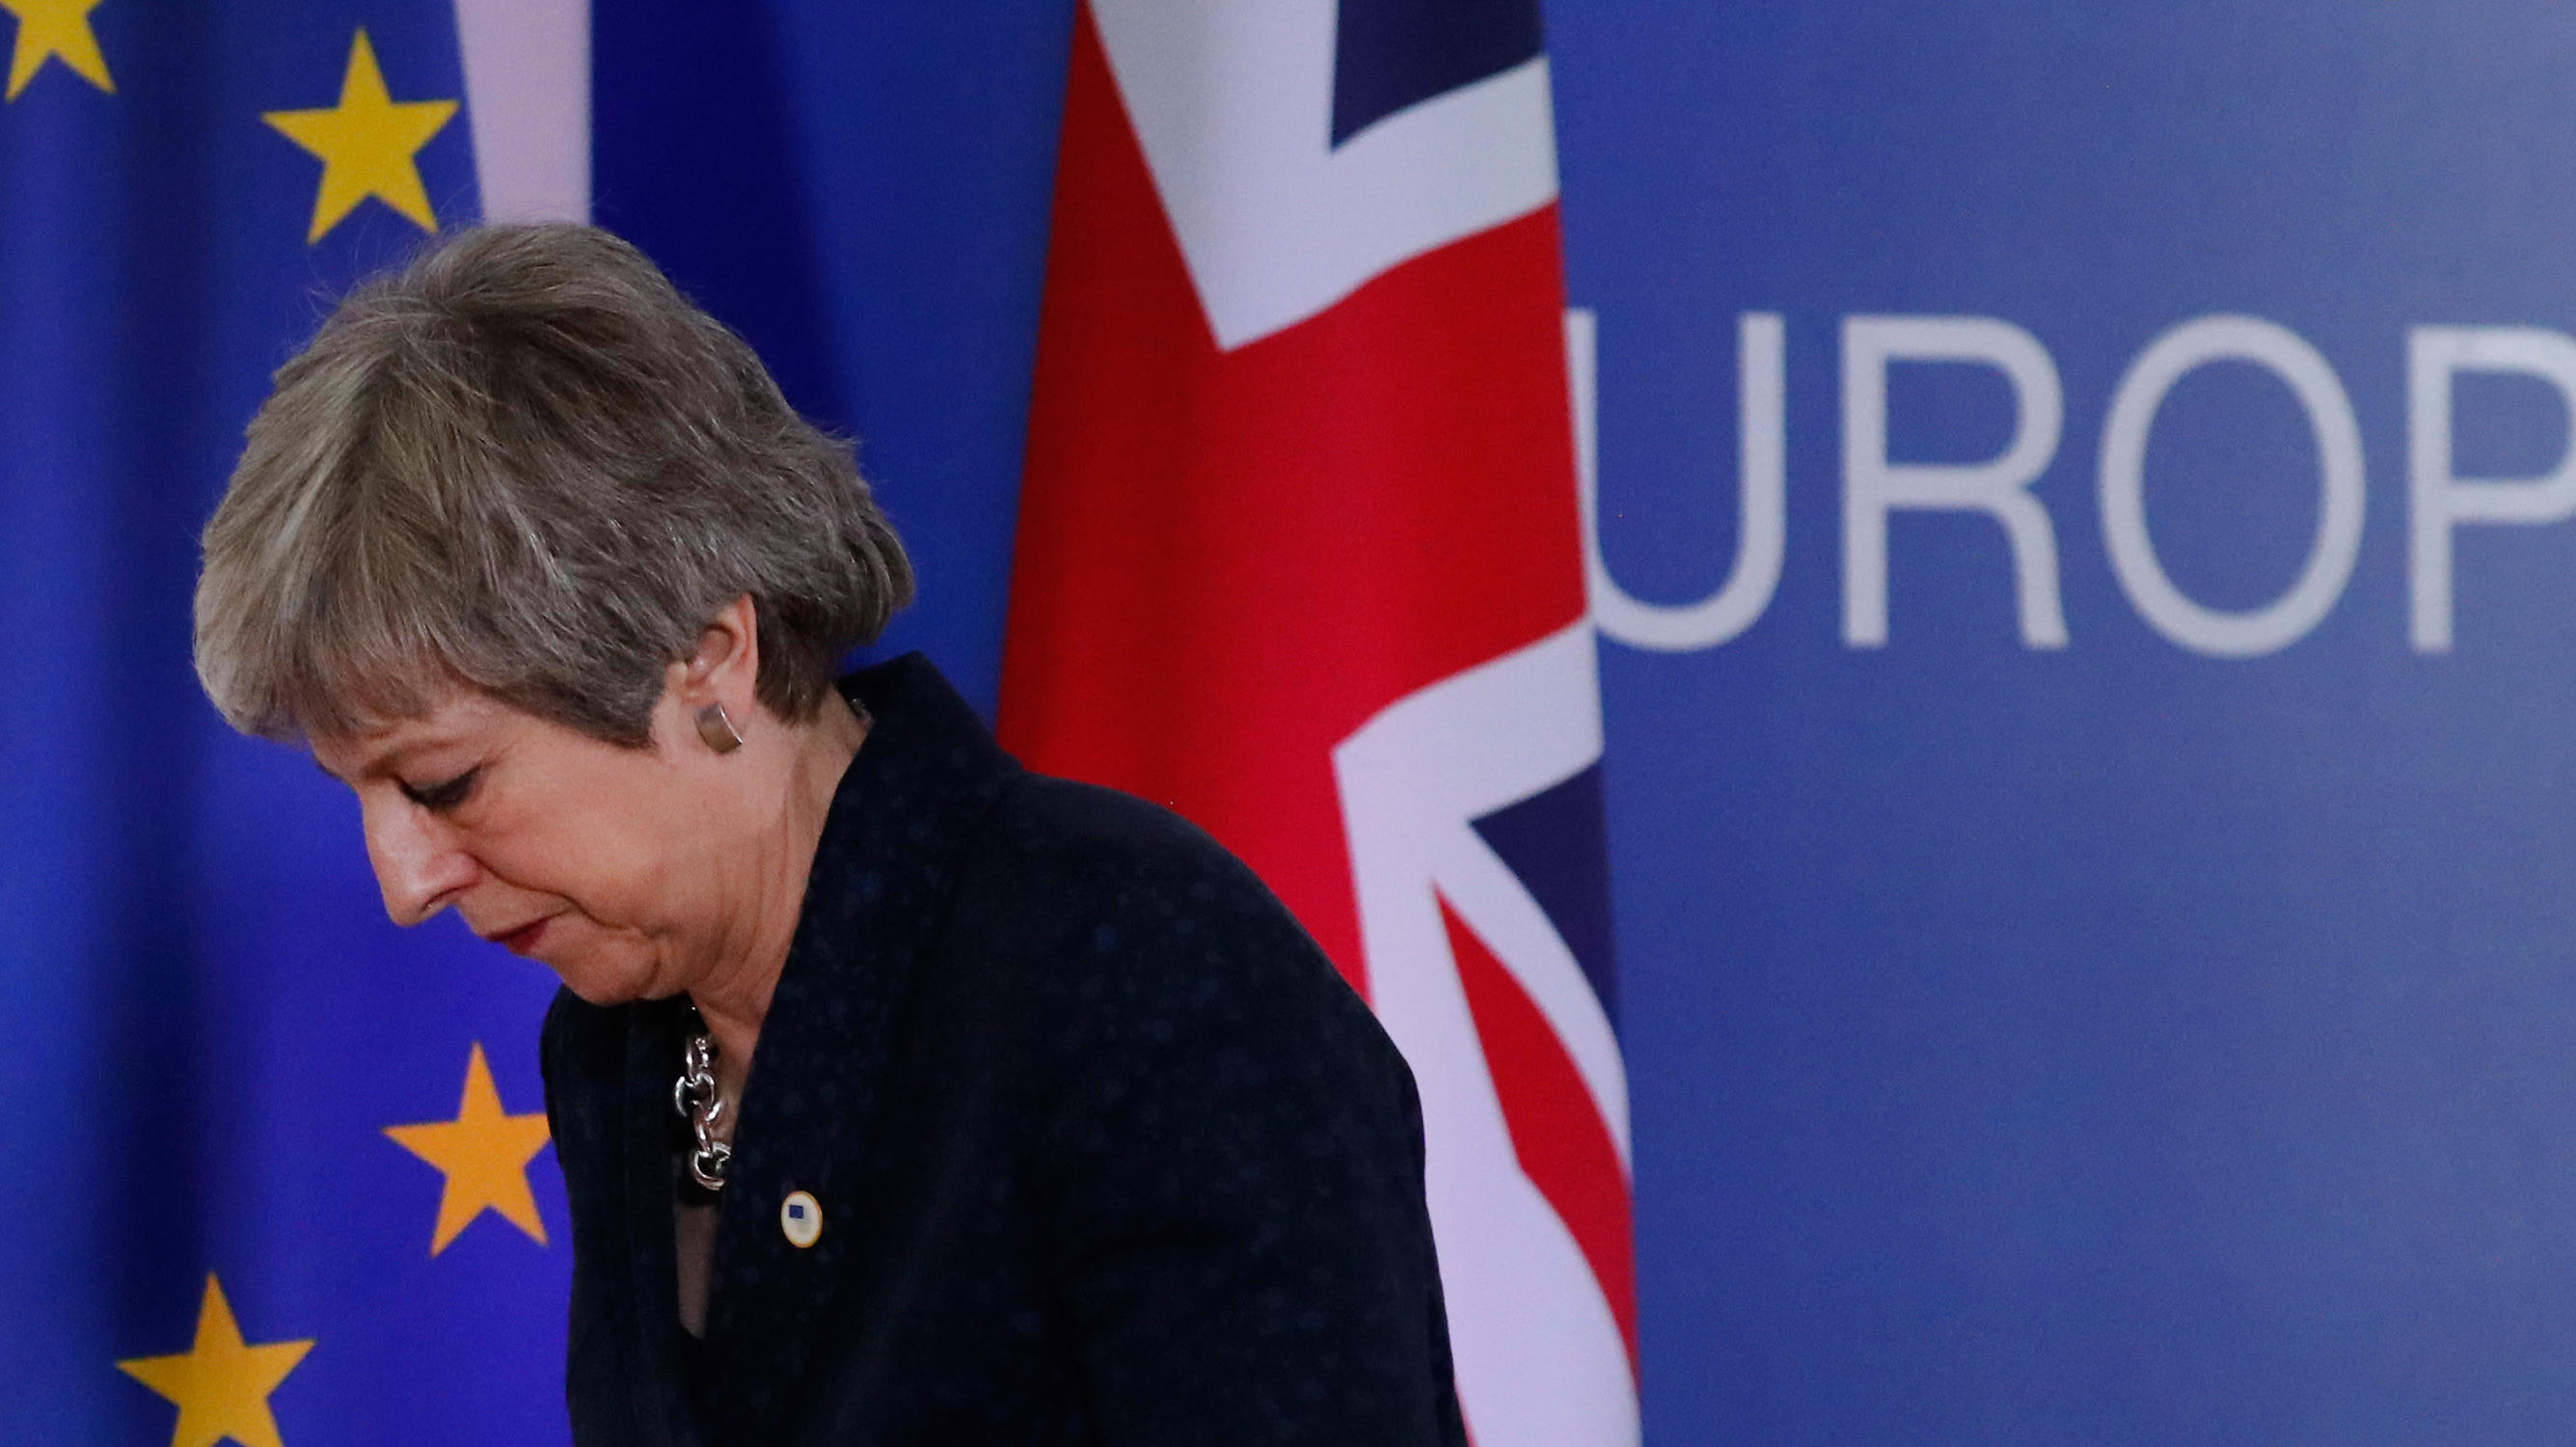 21.03.2019, Belgien, Brüssel: Theresa May, Premierministerin von Großbritannien, verlässt eine Pressekonferenz im Rahmen des EU-Gipfels. (Wiederholung mit verändertem Bildausschnitt) Foto: Frank Augstein/AP/dpa +++ dpa-Bildfunk +++